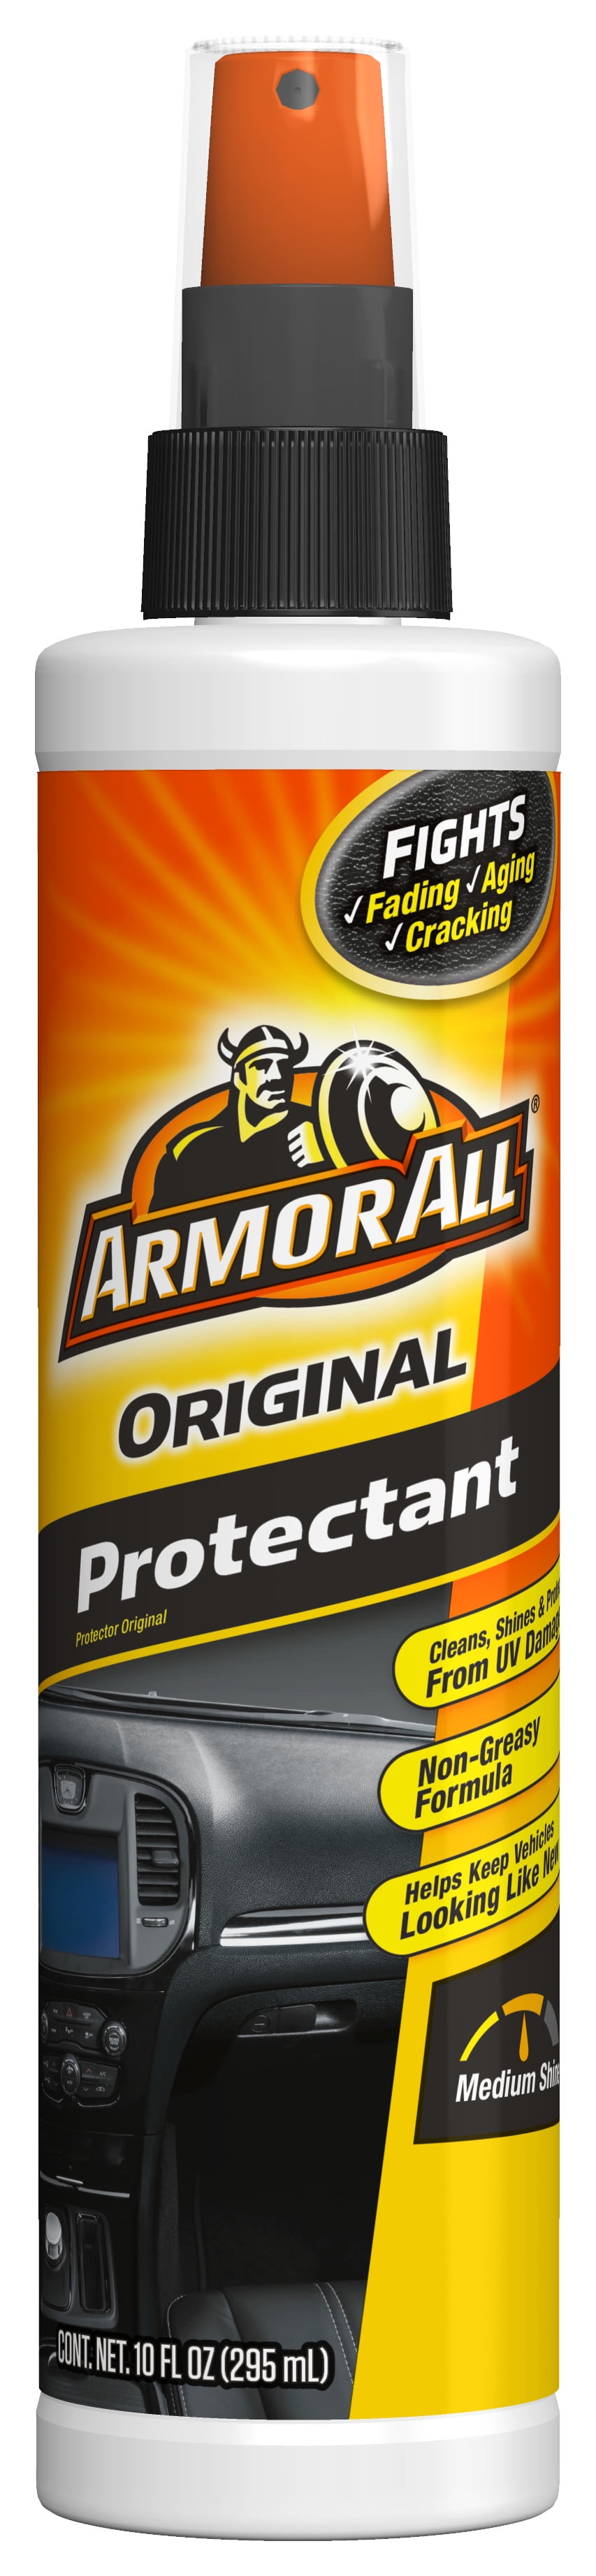 Armor All Protectant, Original - 32 fl oz spray